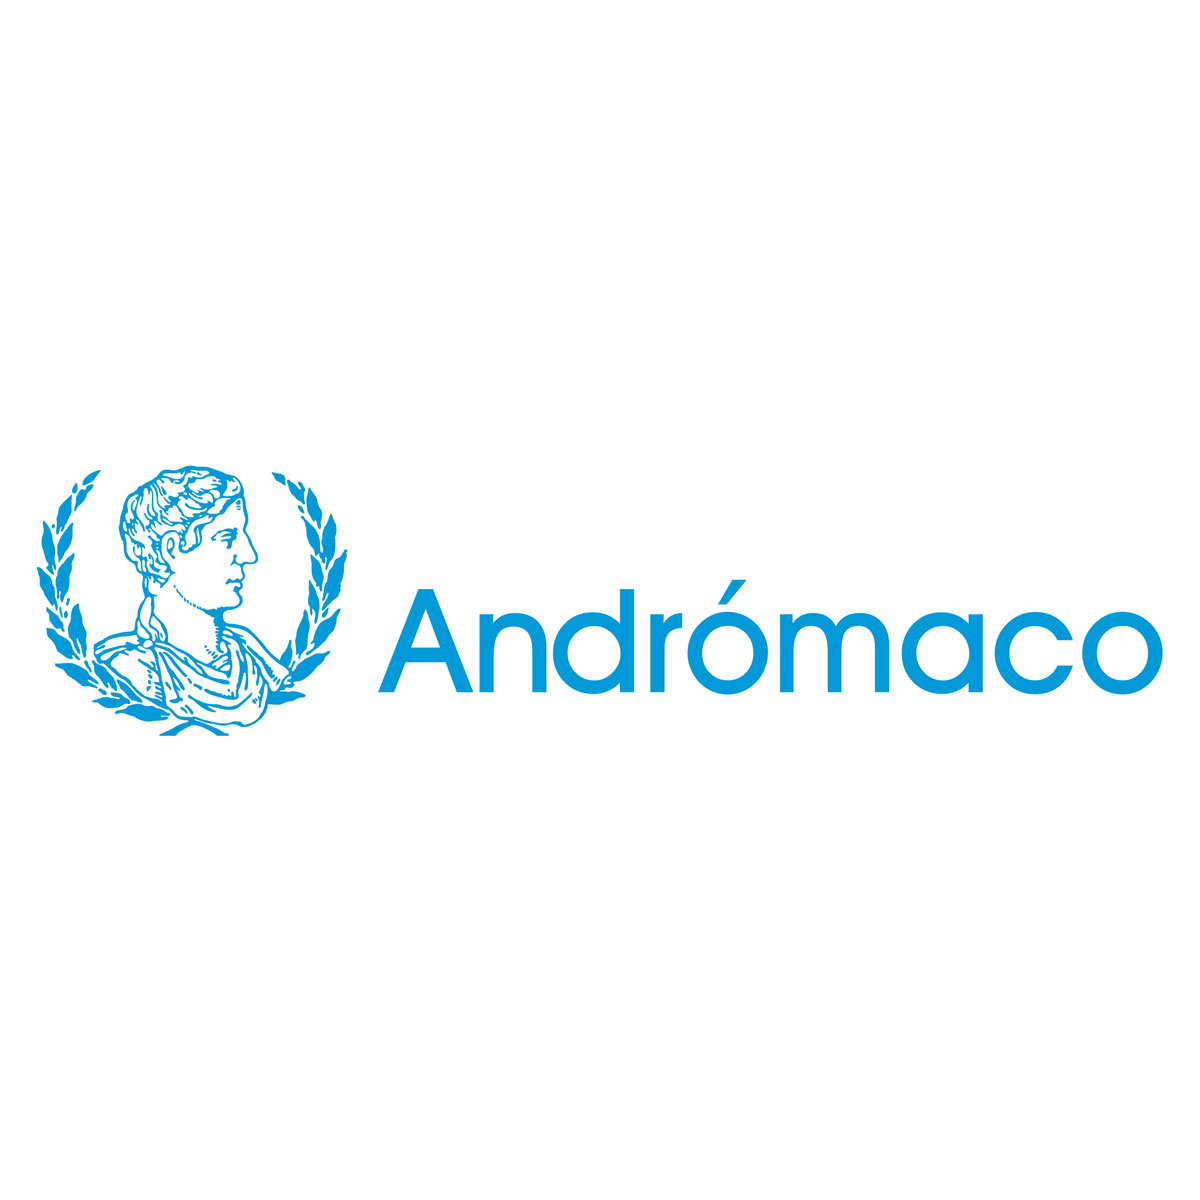 (c) Andromaco.com